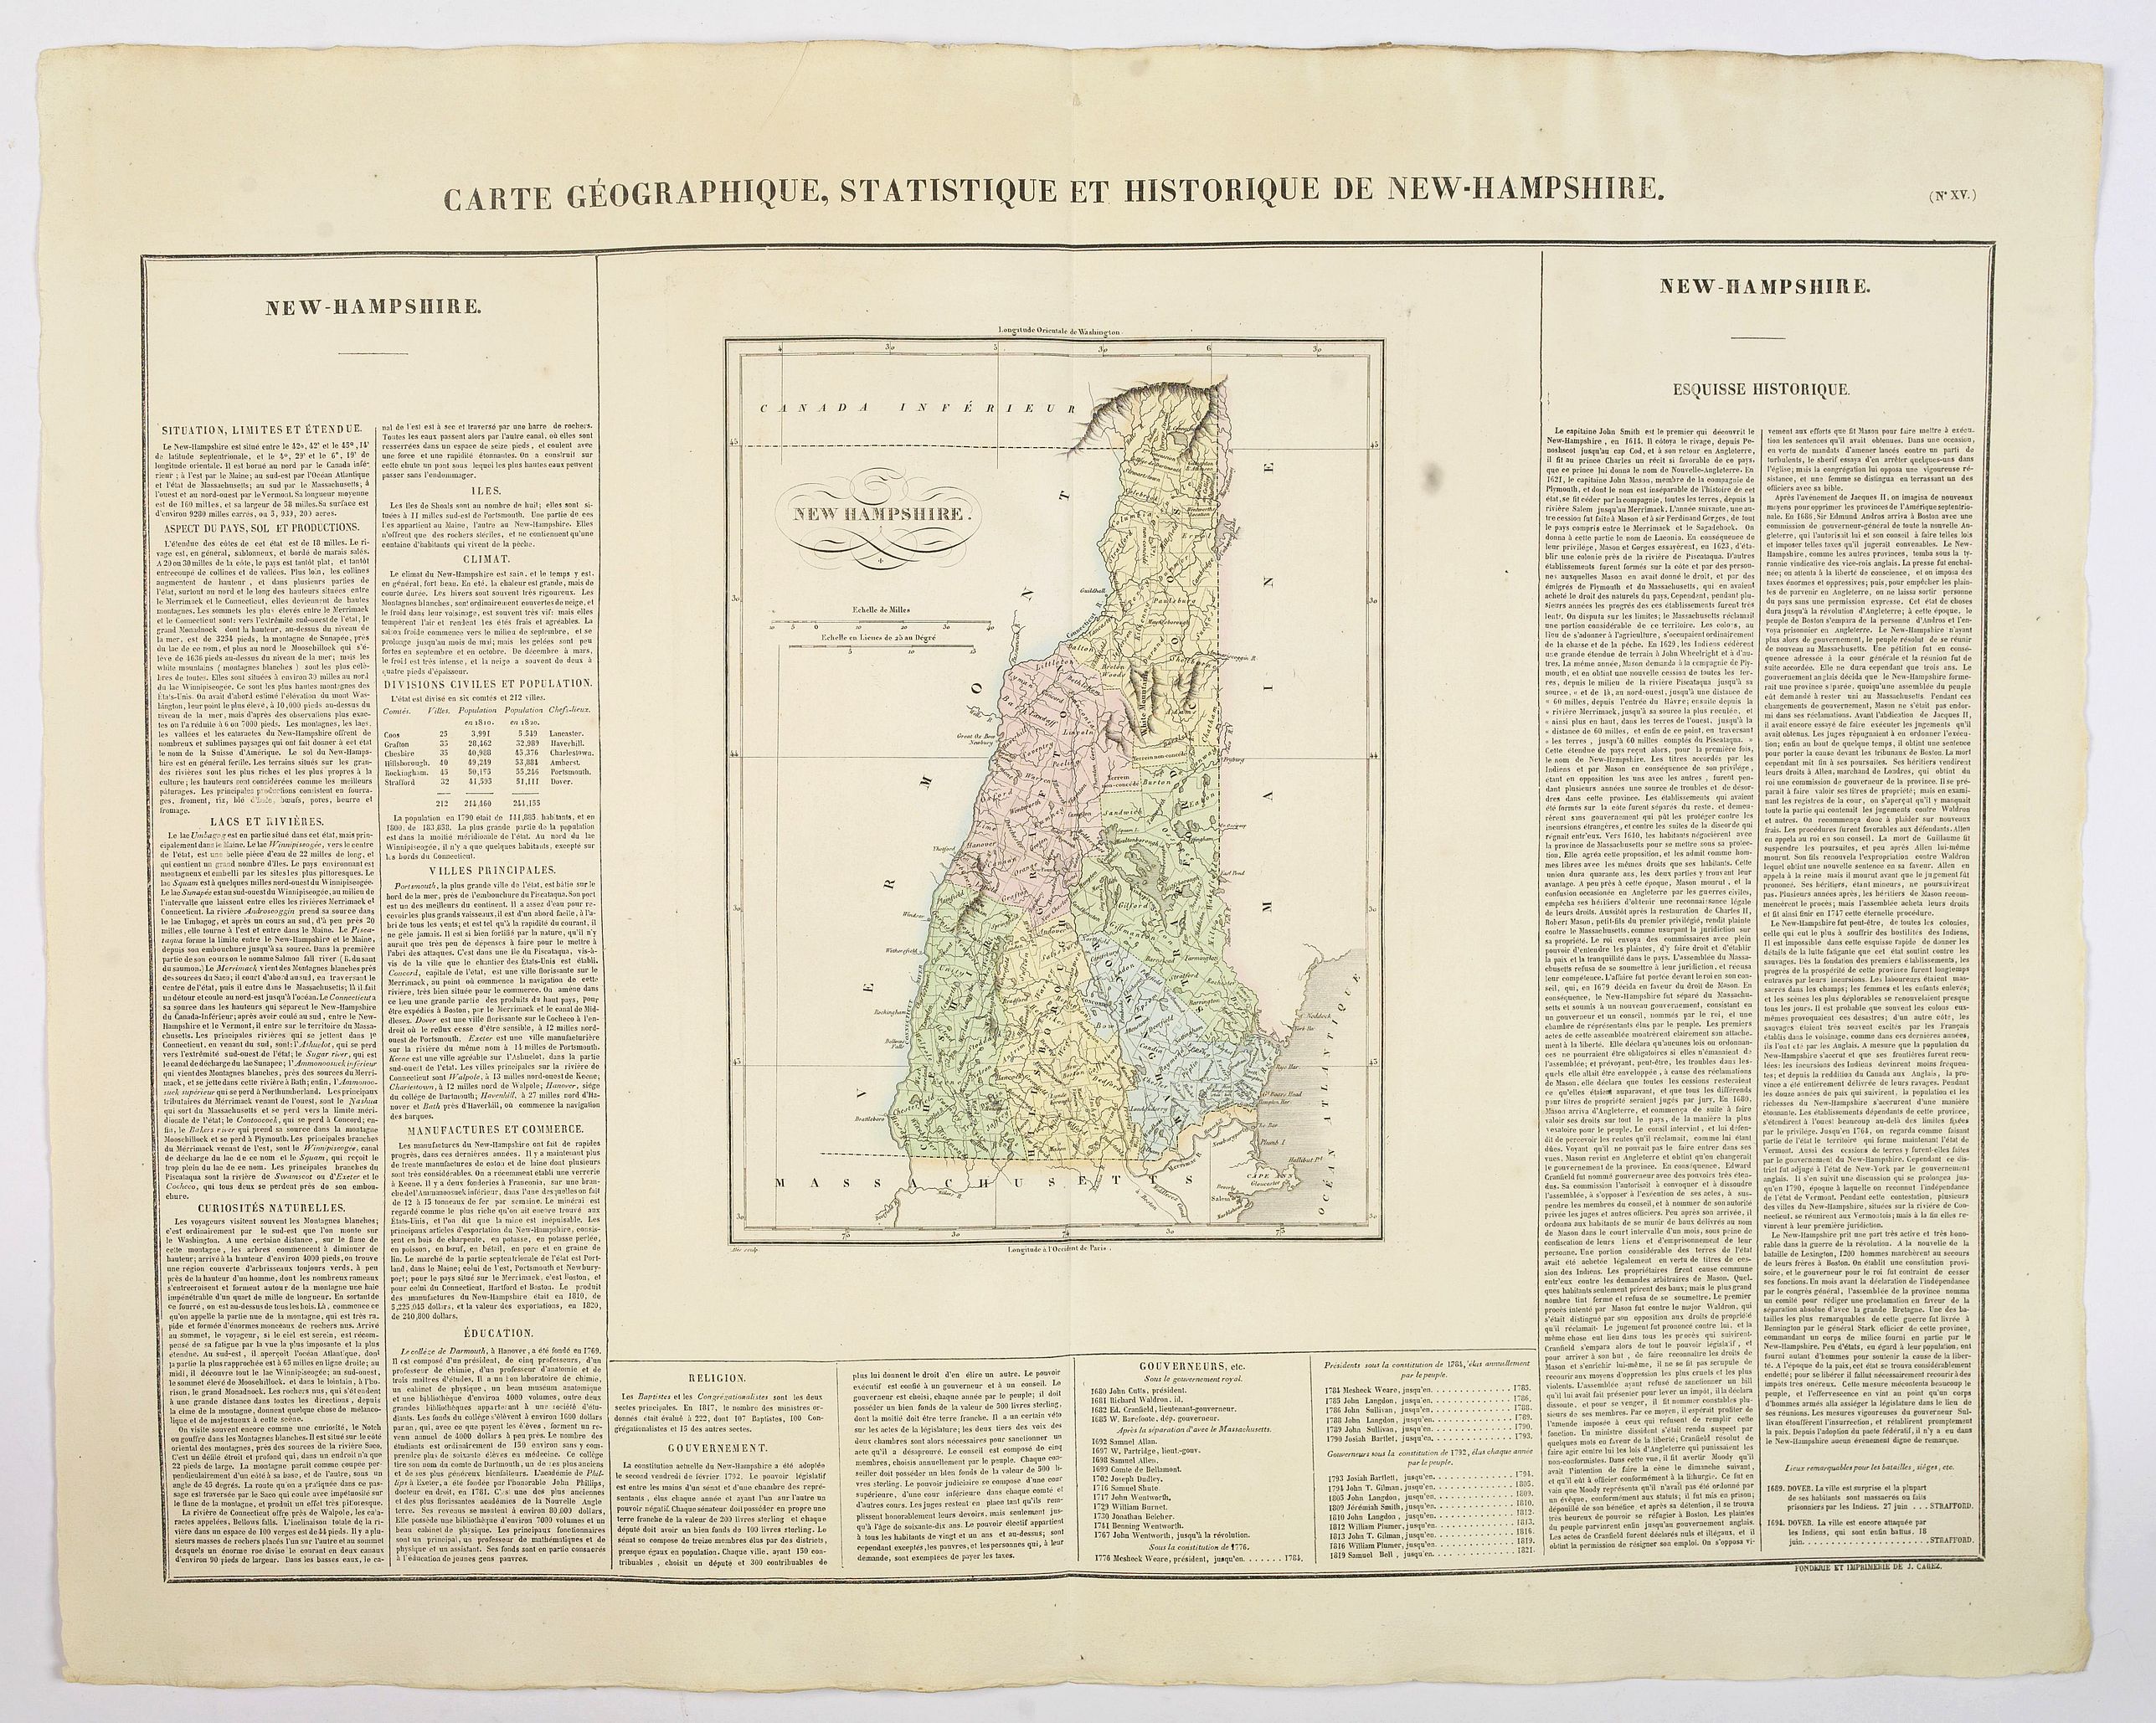 Carte Geographique, Statistique et Historique du New Hampshire